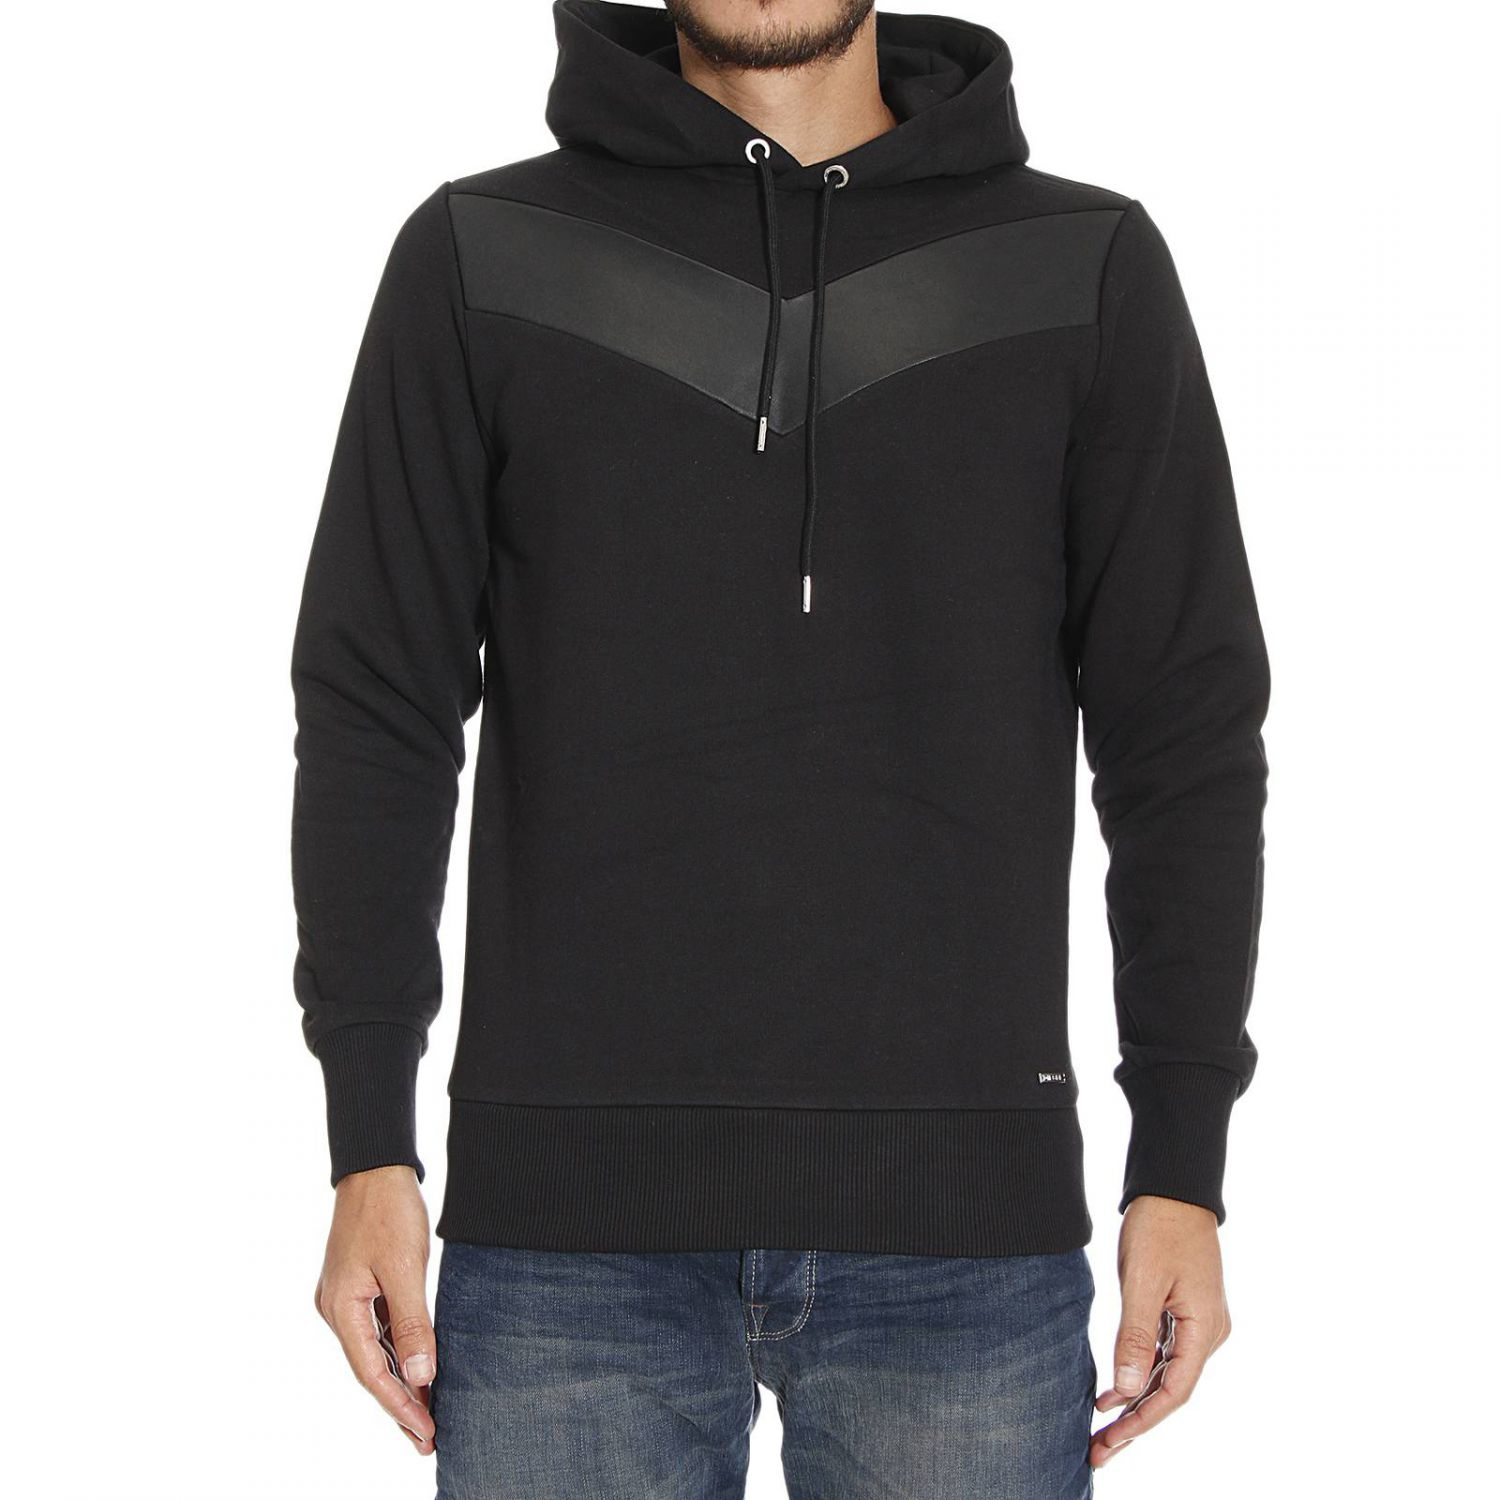 Lyst - Diesel Sweater in Black for Men